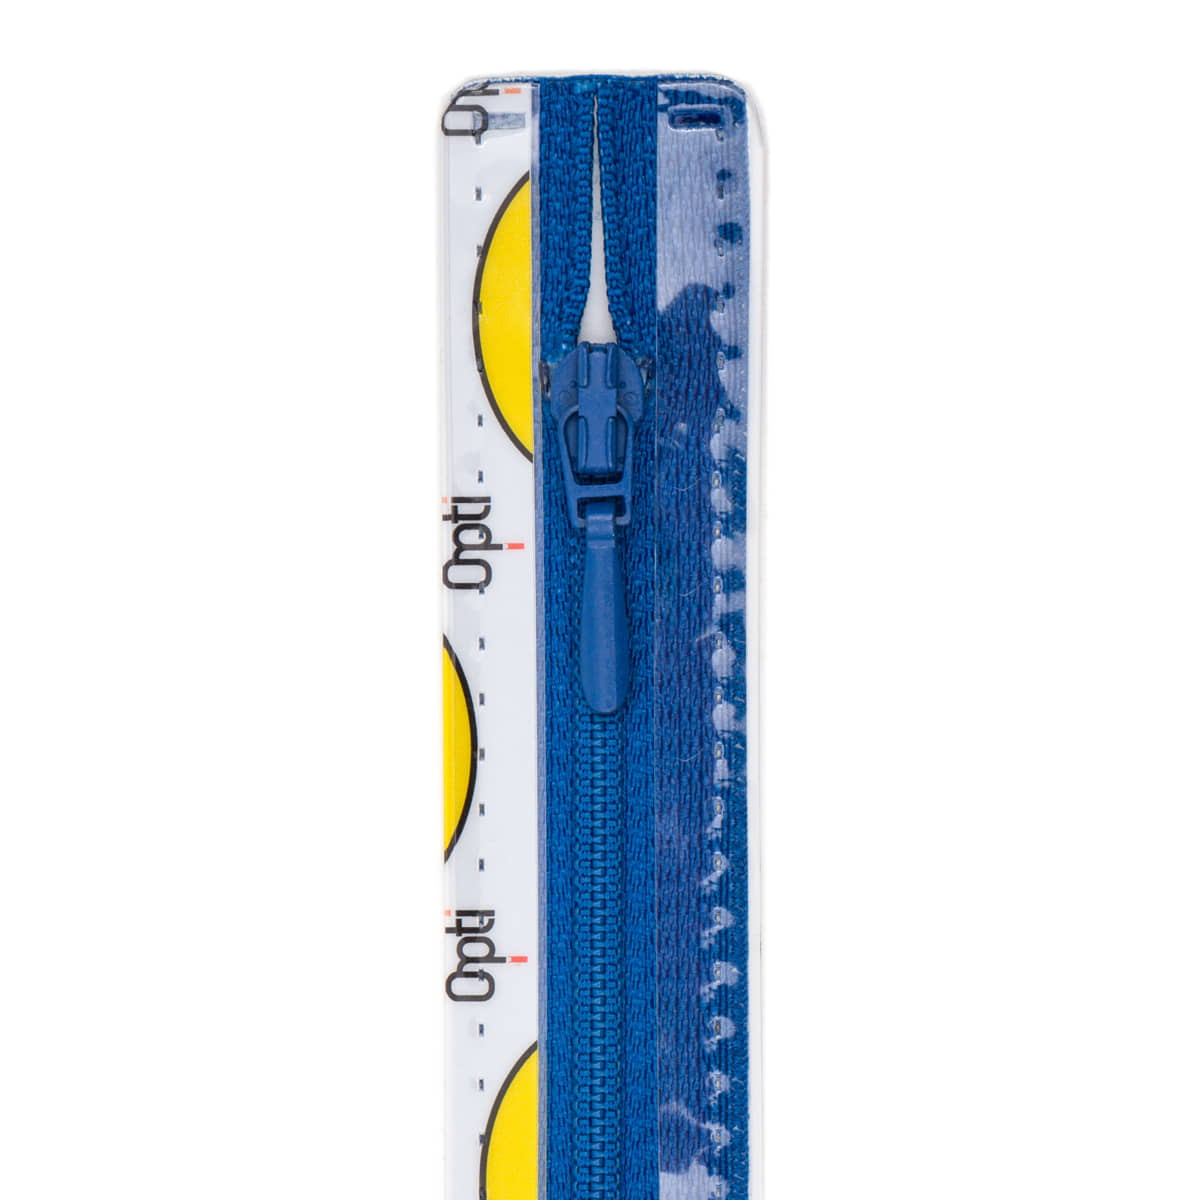 Rits 15 cm | Opti S40 spiraal | druppeltrekker | 215 kobalt blauw Rits OPTI-4800-S40-15-215-KOBALT BLAUW - Fourniturenkraam.nl